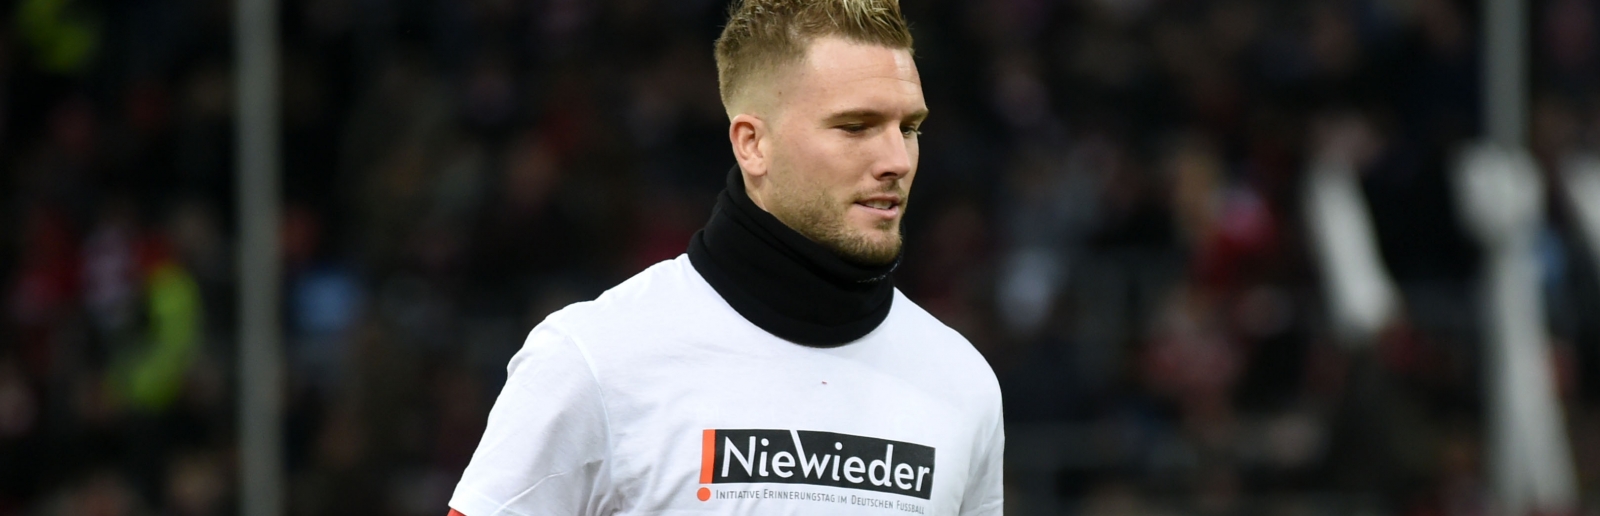 Ein Fußballer mit weiß-rotem FC-Trikot und schwarzer Hose geht über den Sportplatz, auf seinem T-Shirt steht Weiß auf Schwarz "Nie Wieder".